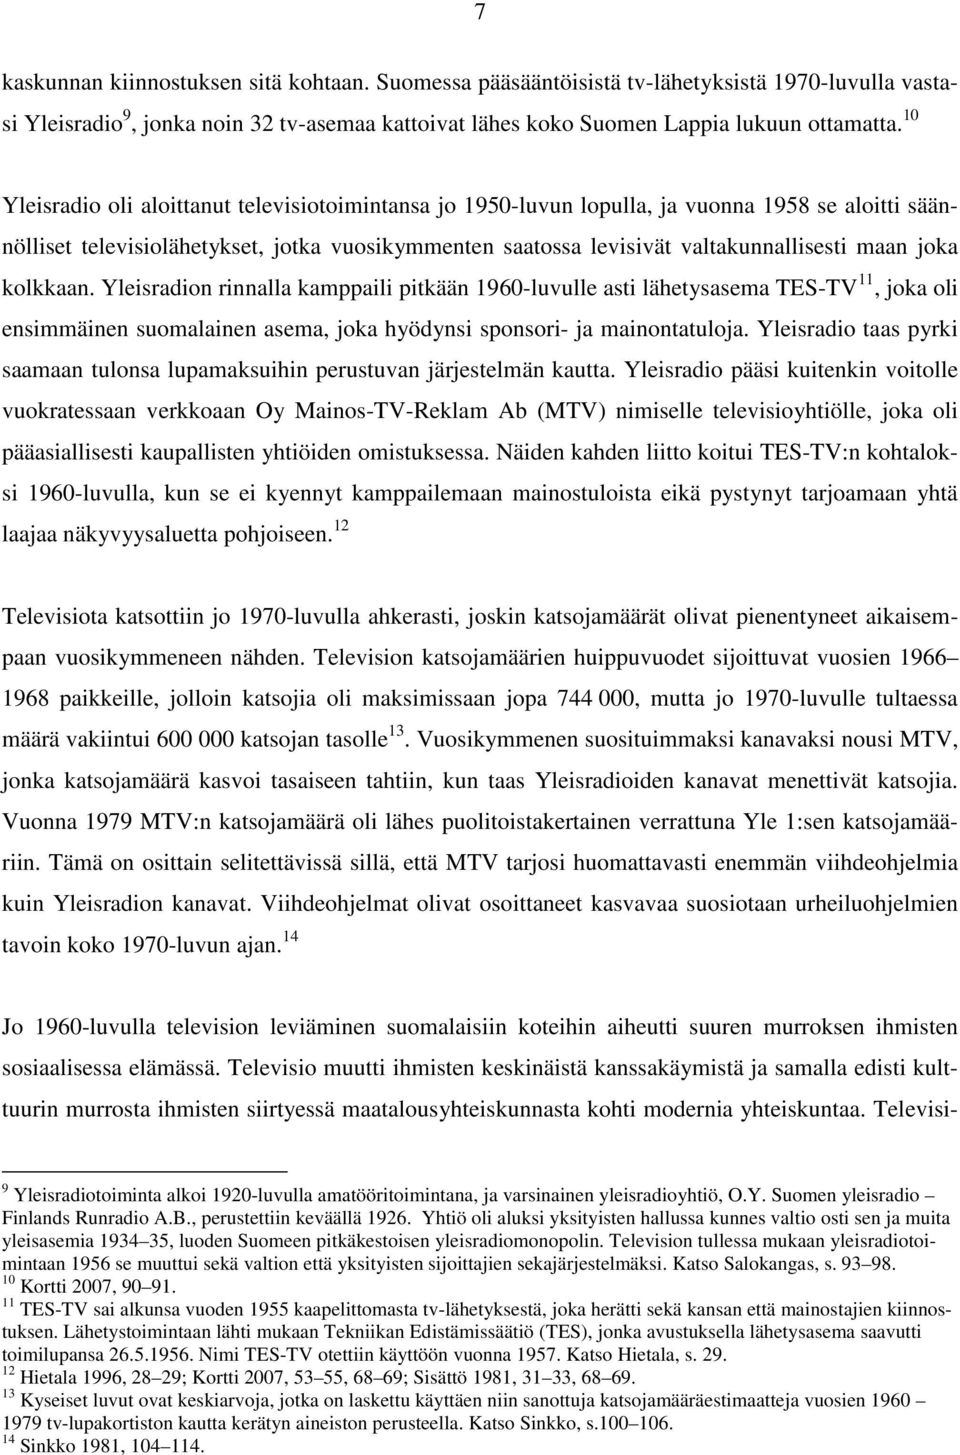 joka kolkkaan. Yleisradion rinnalla kamppaili pitkään 1960-luvulle asti lähetysasema TES-TV 11, joka oli ensimmäinen suomalainen asema, joka hyödynsi sponsori- ja mainontatuloja.